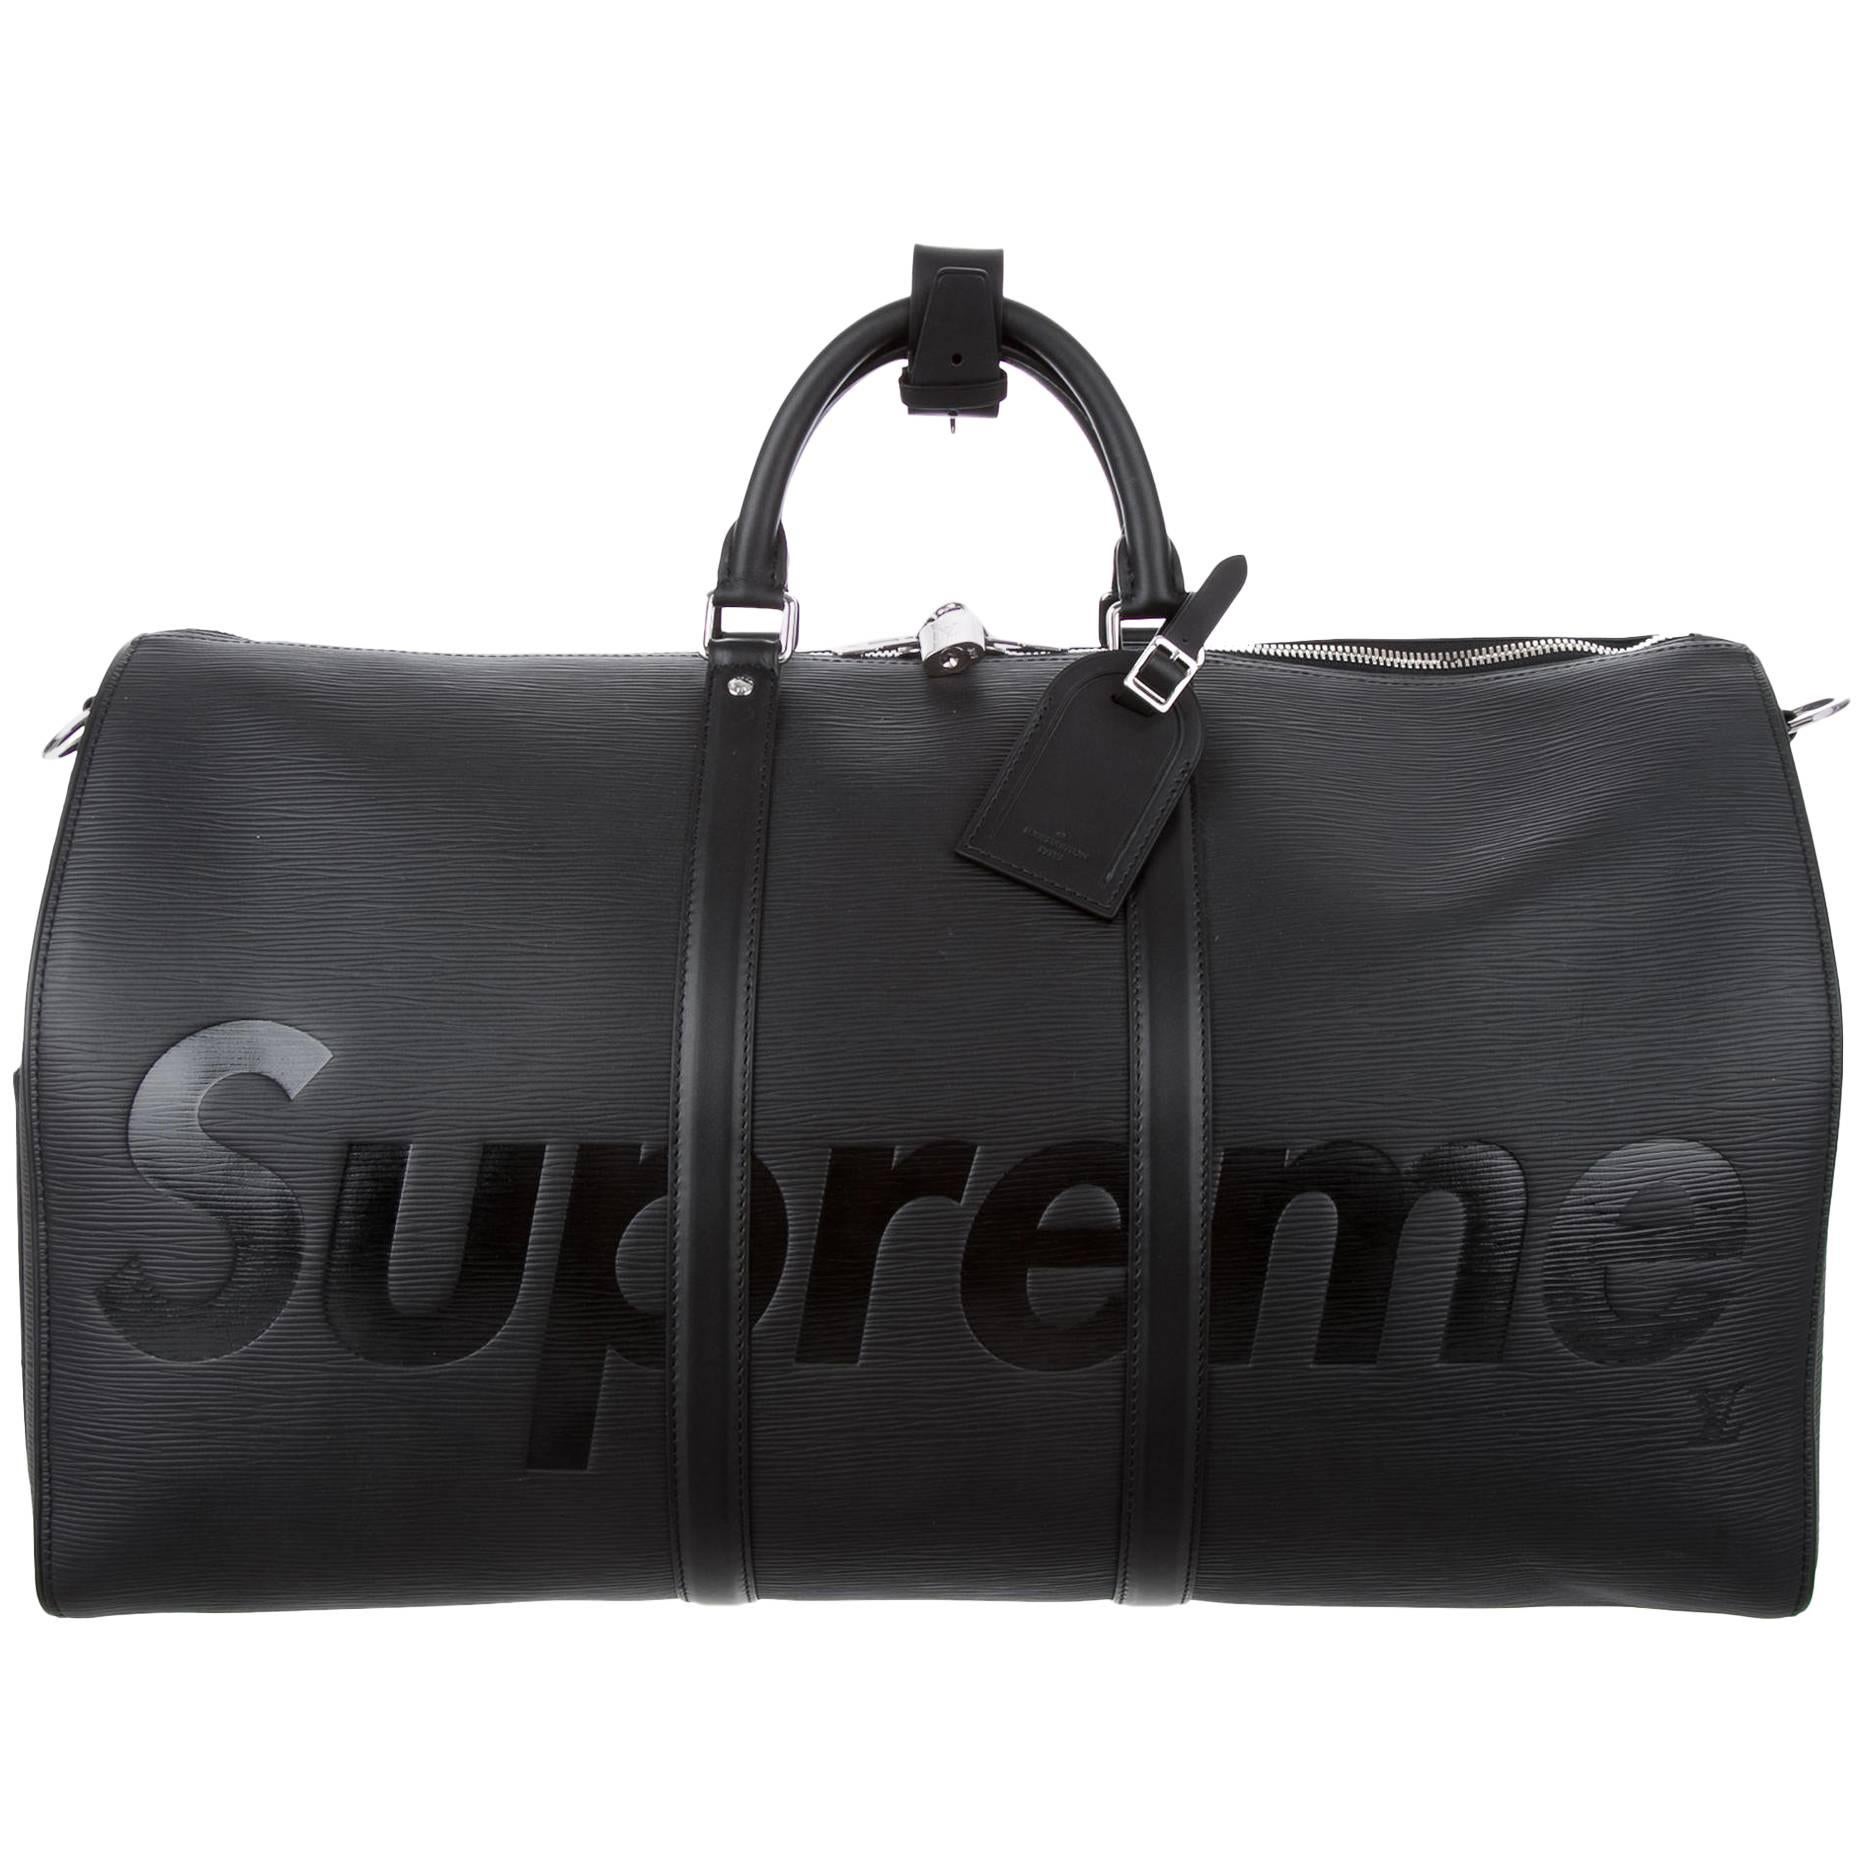 Louis Vuitton Supreme NEW Black Leather Men's Travel Duffle Carryall Bag in Box (sac de voyage en cuir noir)